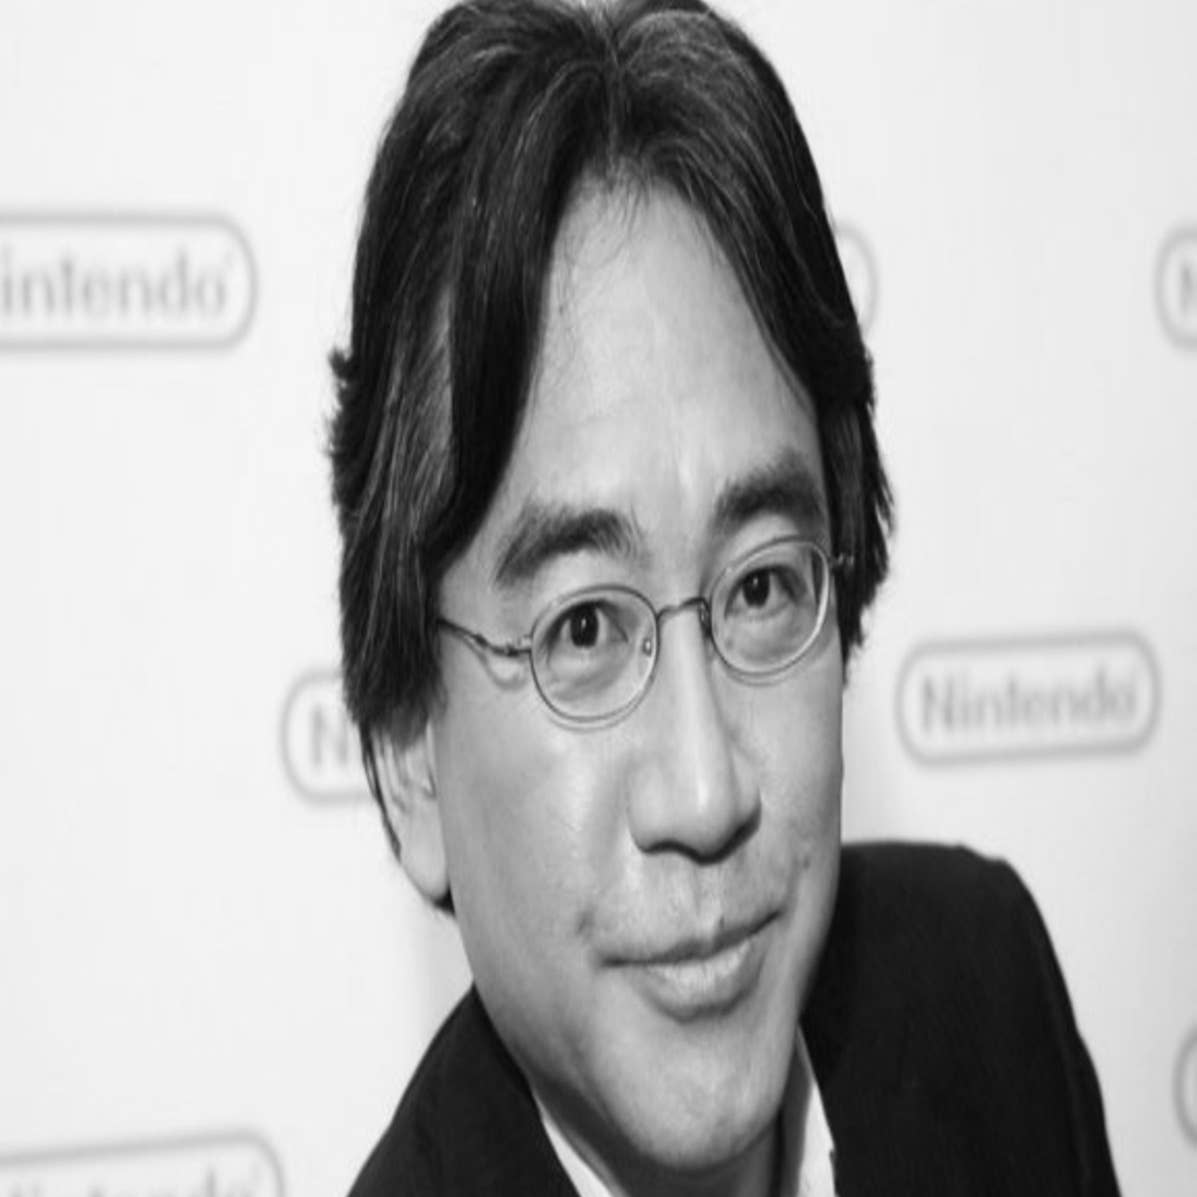 Shigeru Miyamoto Net Worth - Employment Security Commission